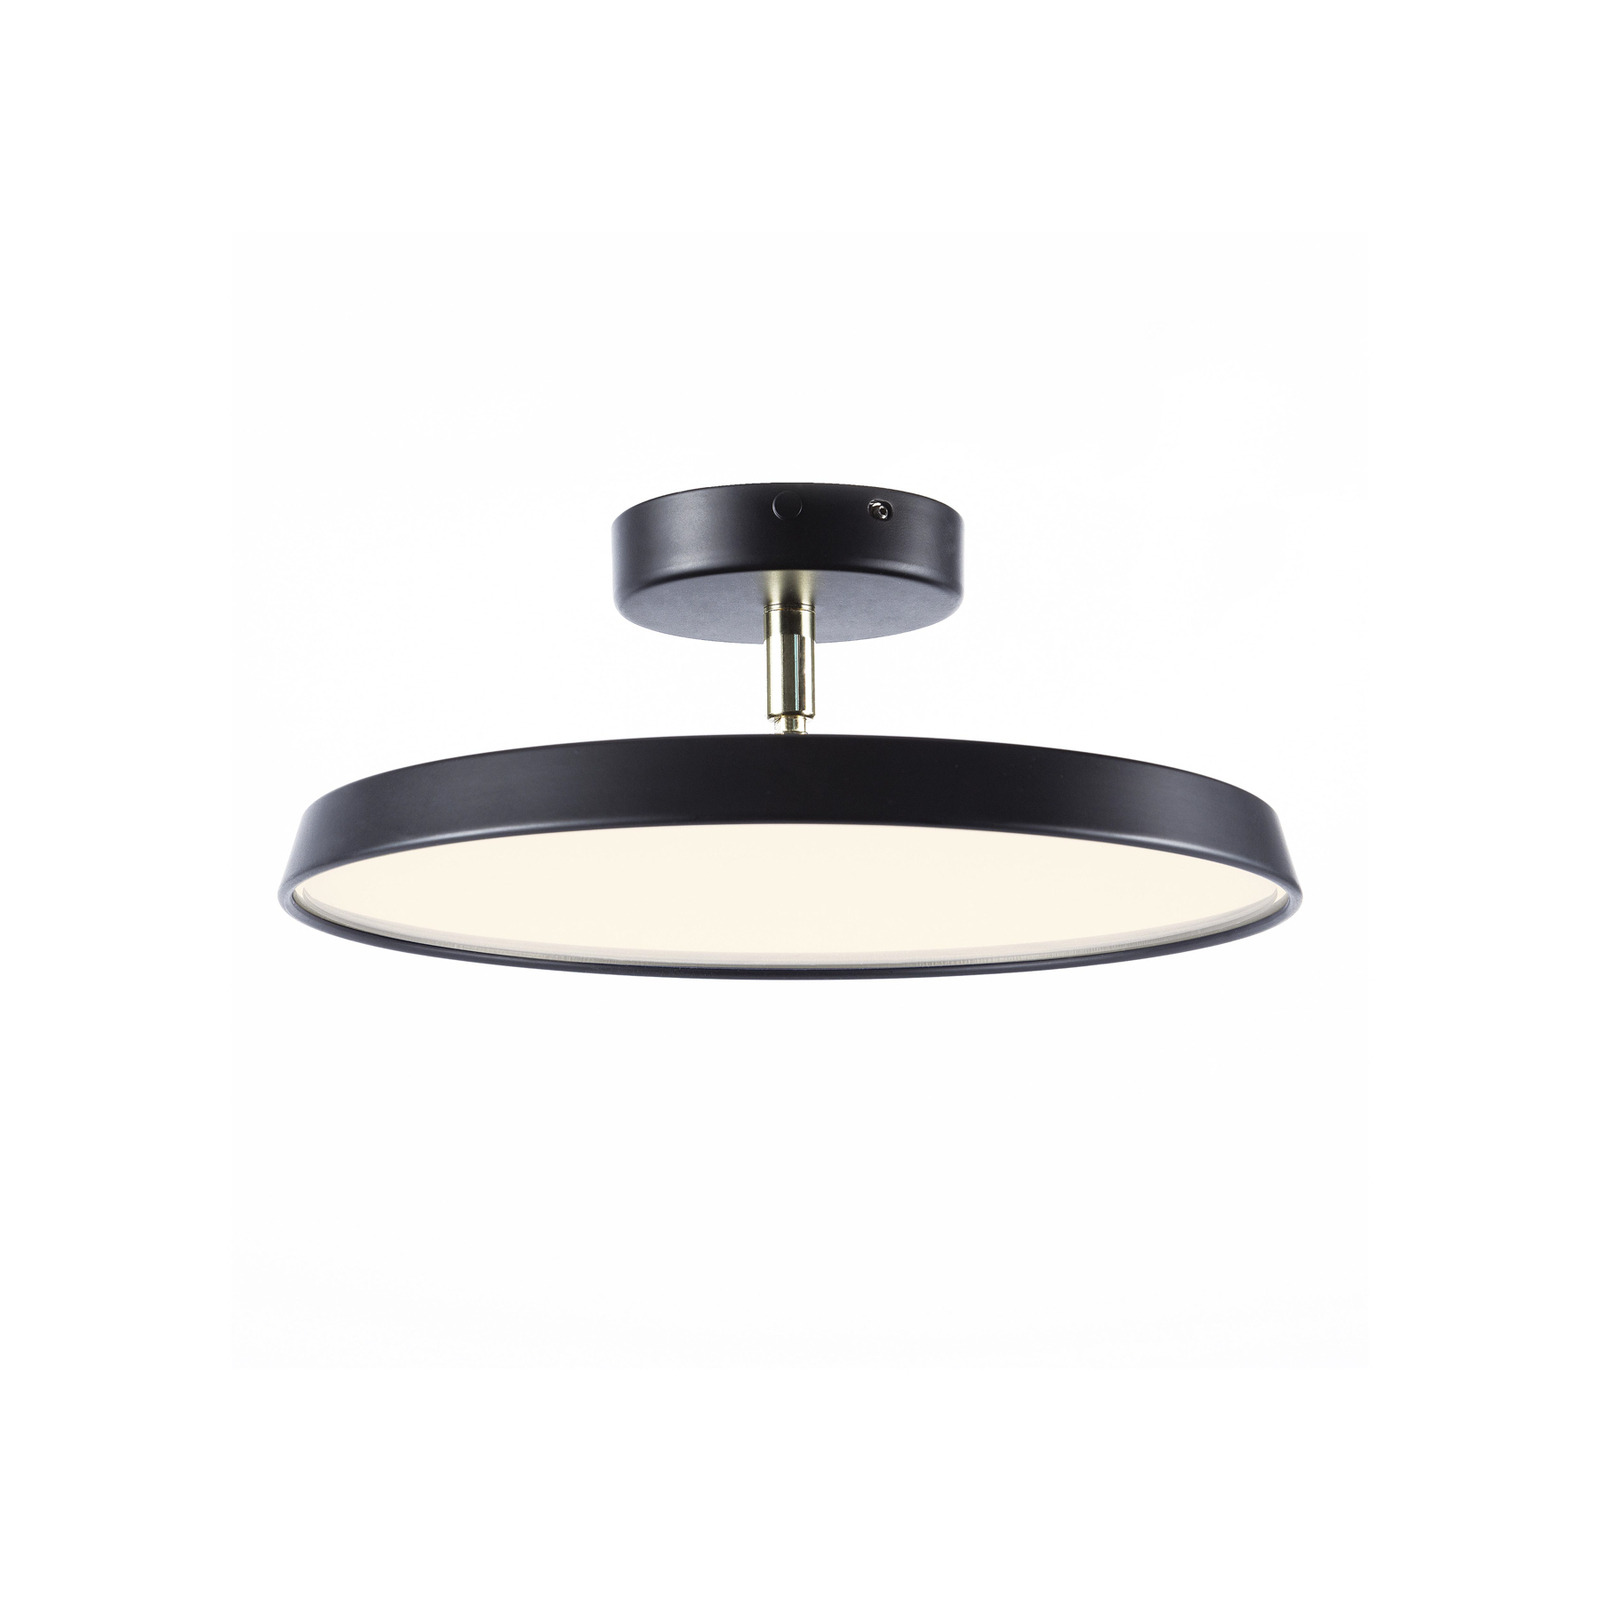 LED stropné svietidlo Kaito 2 Pro, Ø 30 cm, čierna farba, rozstupy